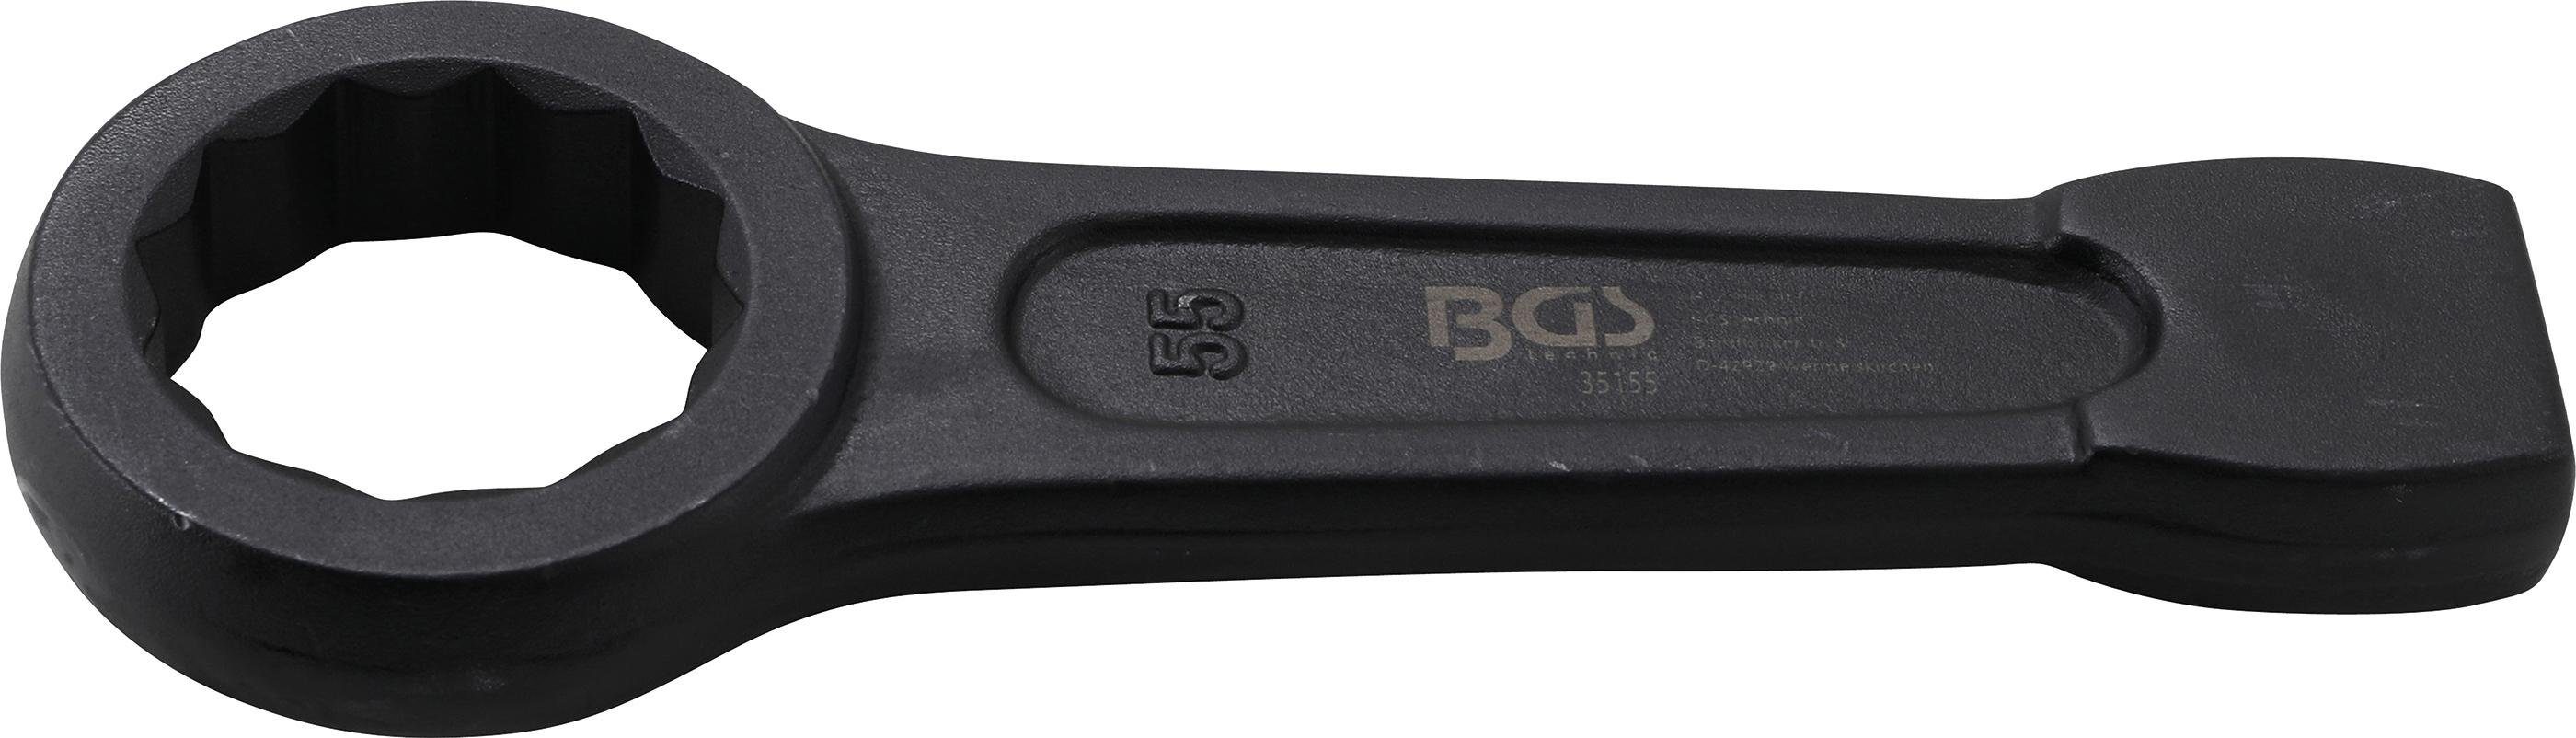 BGS technic Ringschlüssel Schlag-Ringschlüssel, SW 55 mm